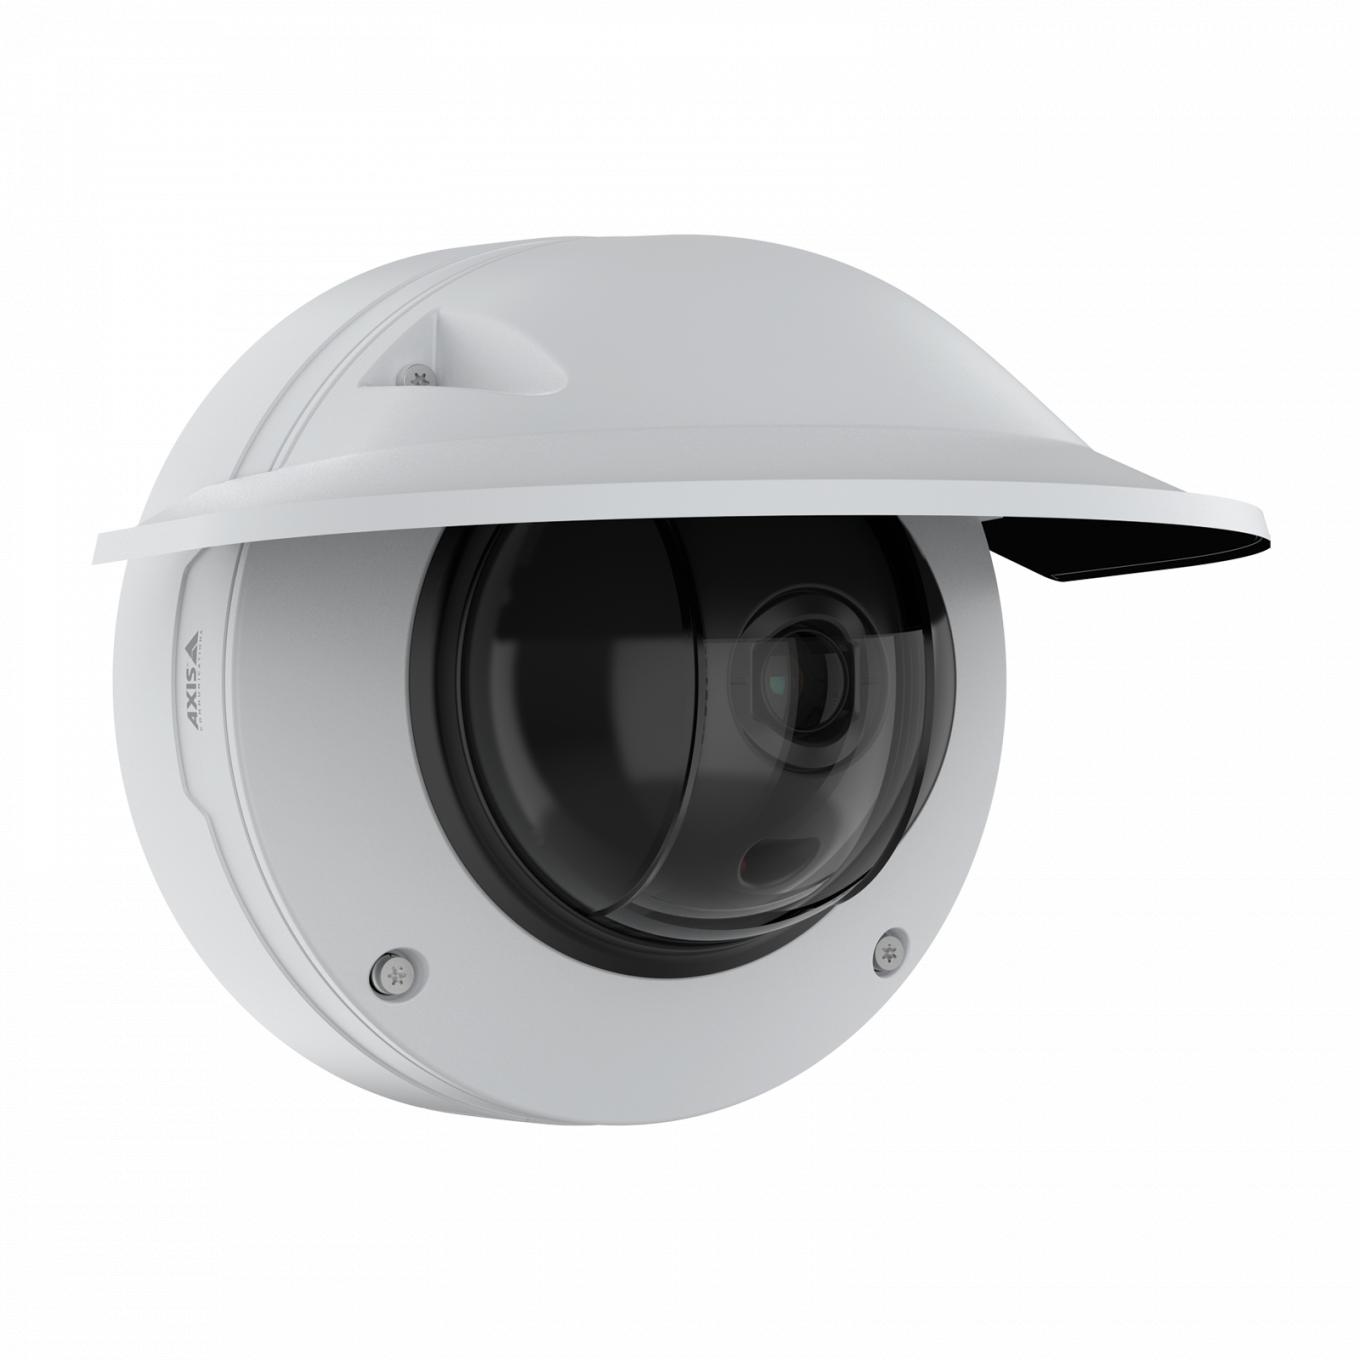 Купольная камера AXIS Q3536-LVE Dome Camera с погодозащитным козырьком, вид с правого угла